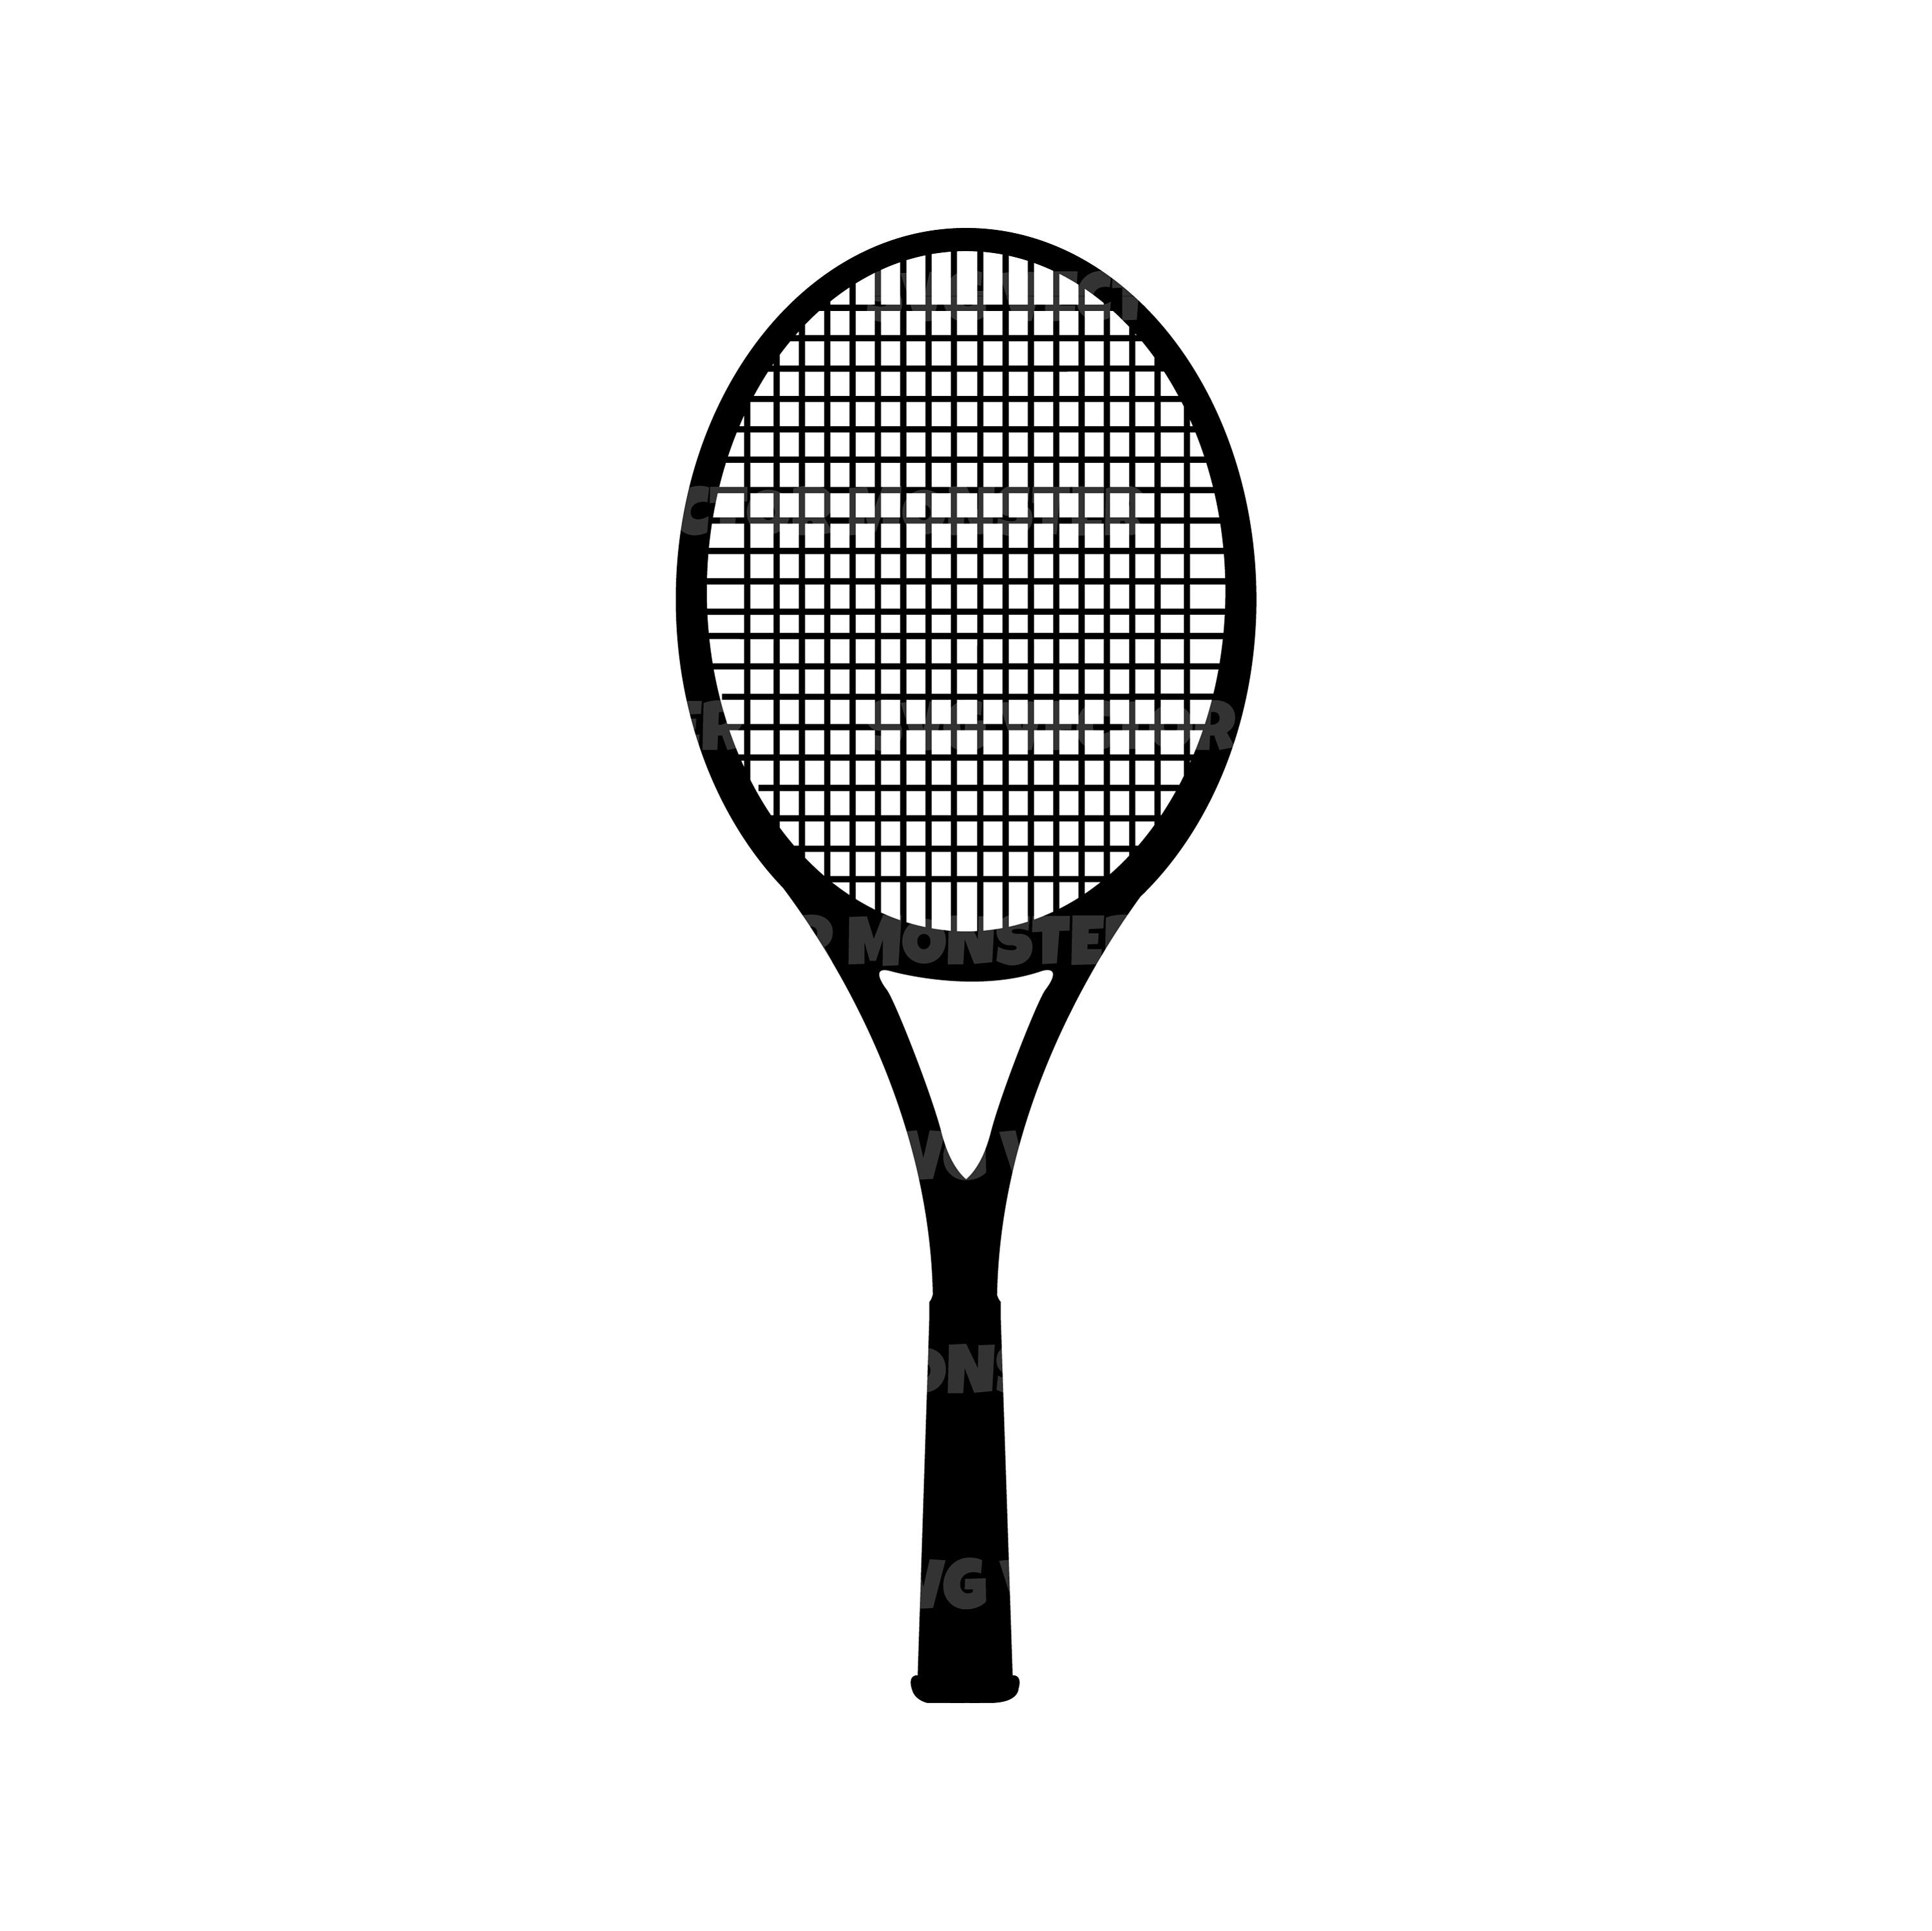 Tennis Vector Png